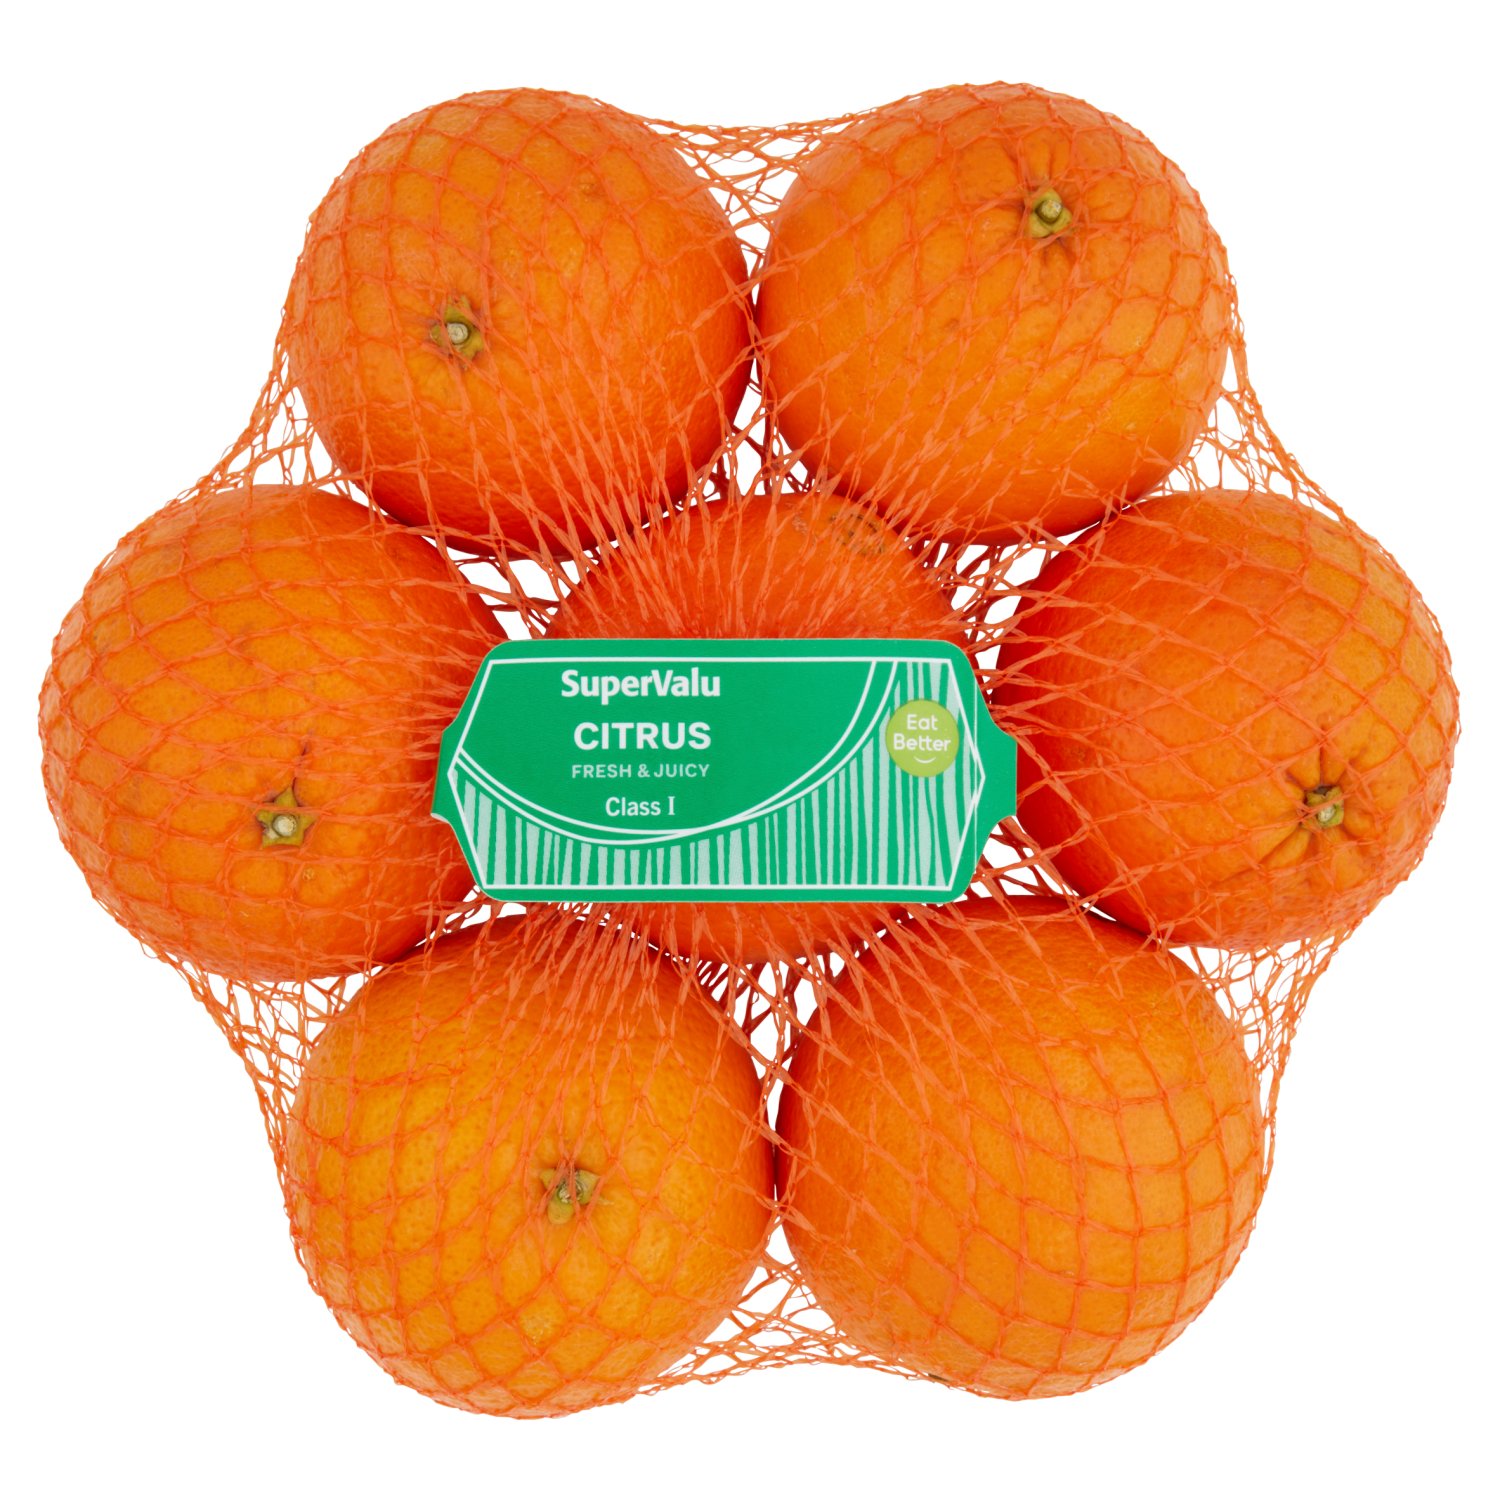 SuperValu Oranges (7 Piece)